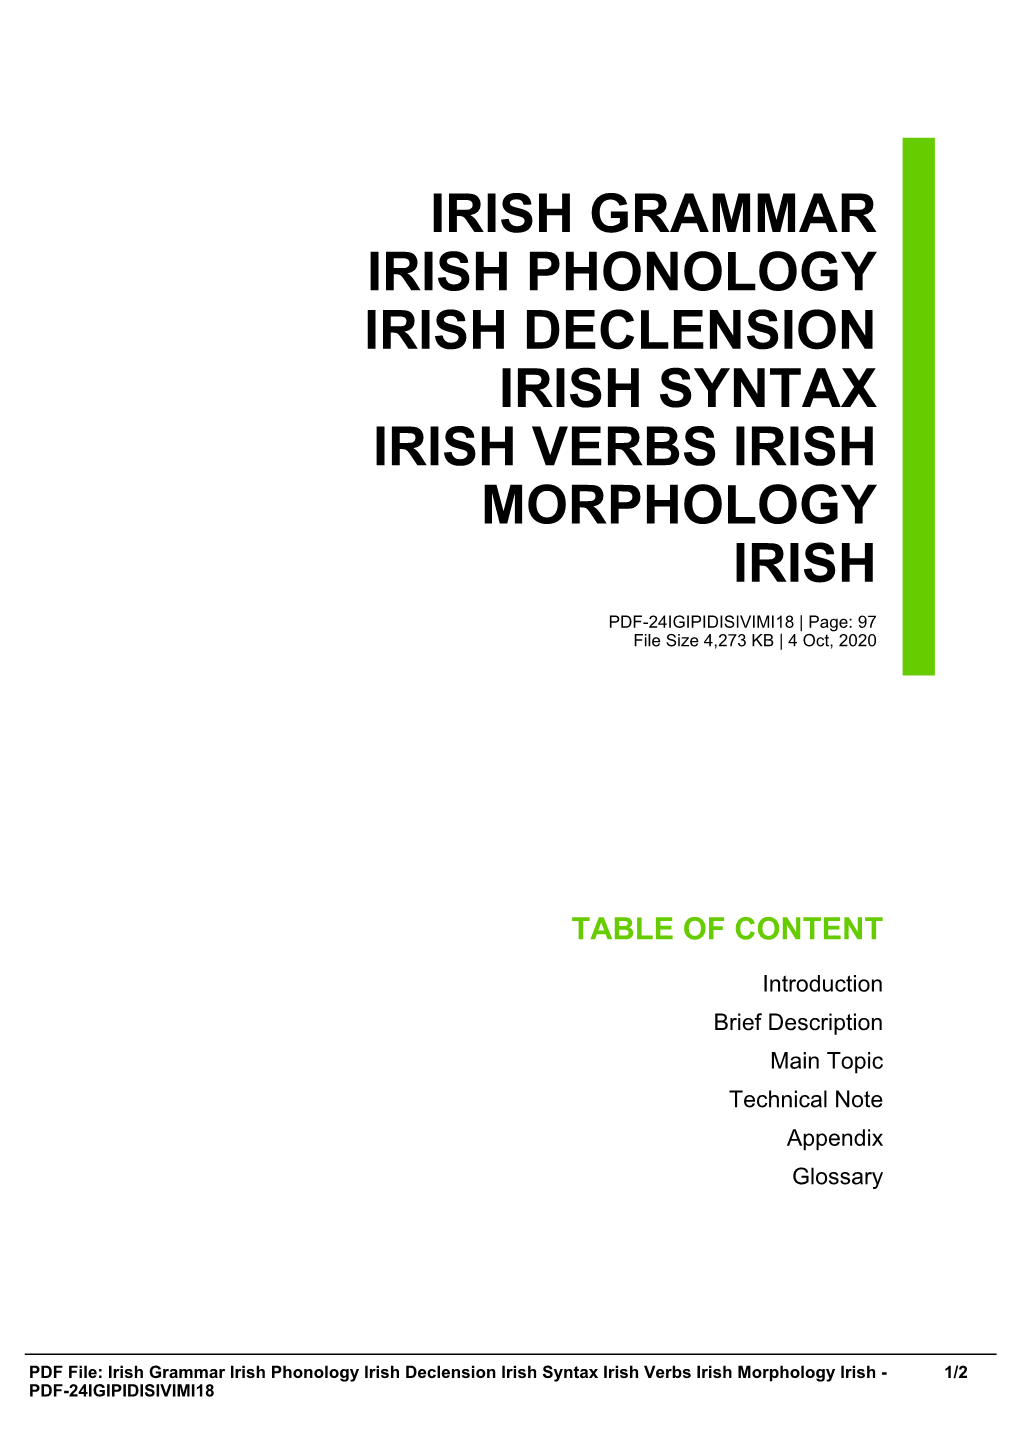 Irish Grammar Irish Phonology Irish Declension Irish Syntax Irish Verbs Irish Morphology Irish